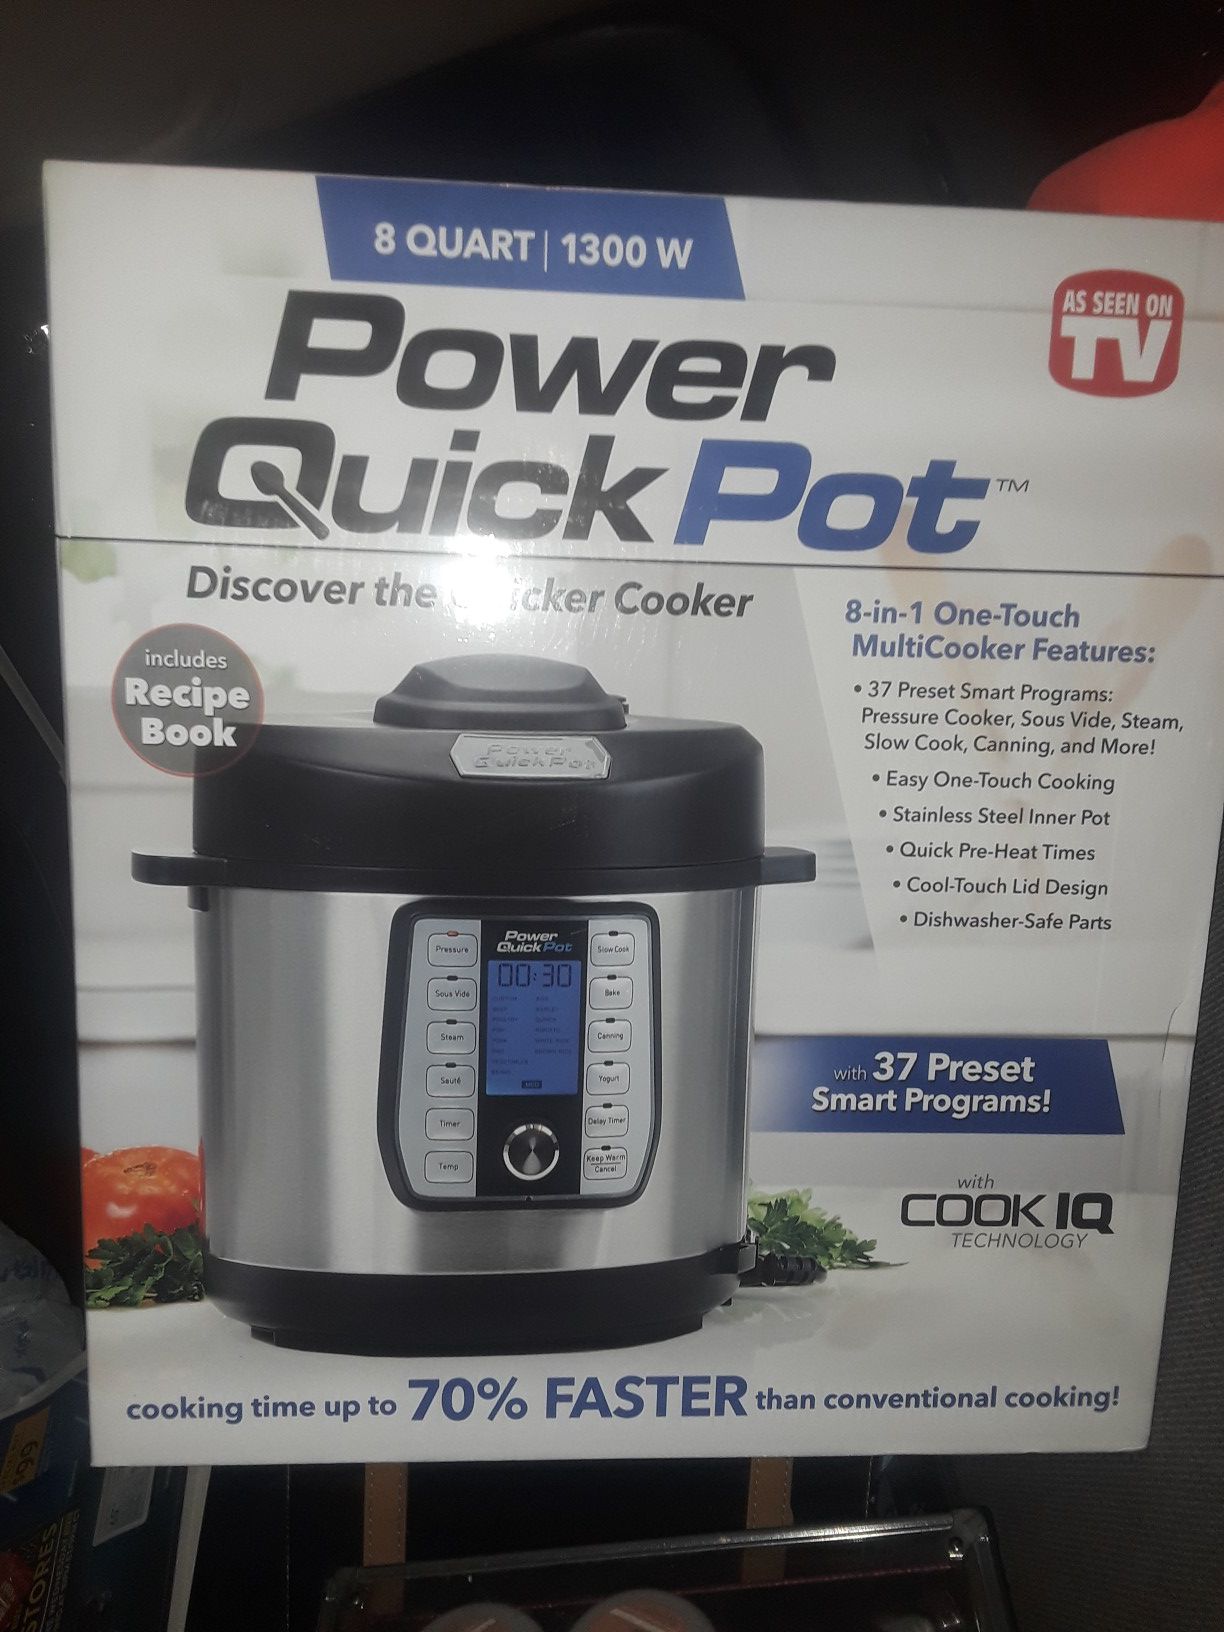 8-Quart Power Quick Pot